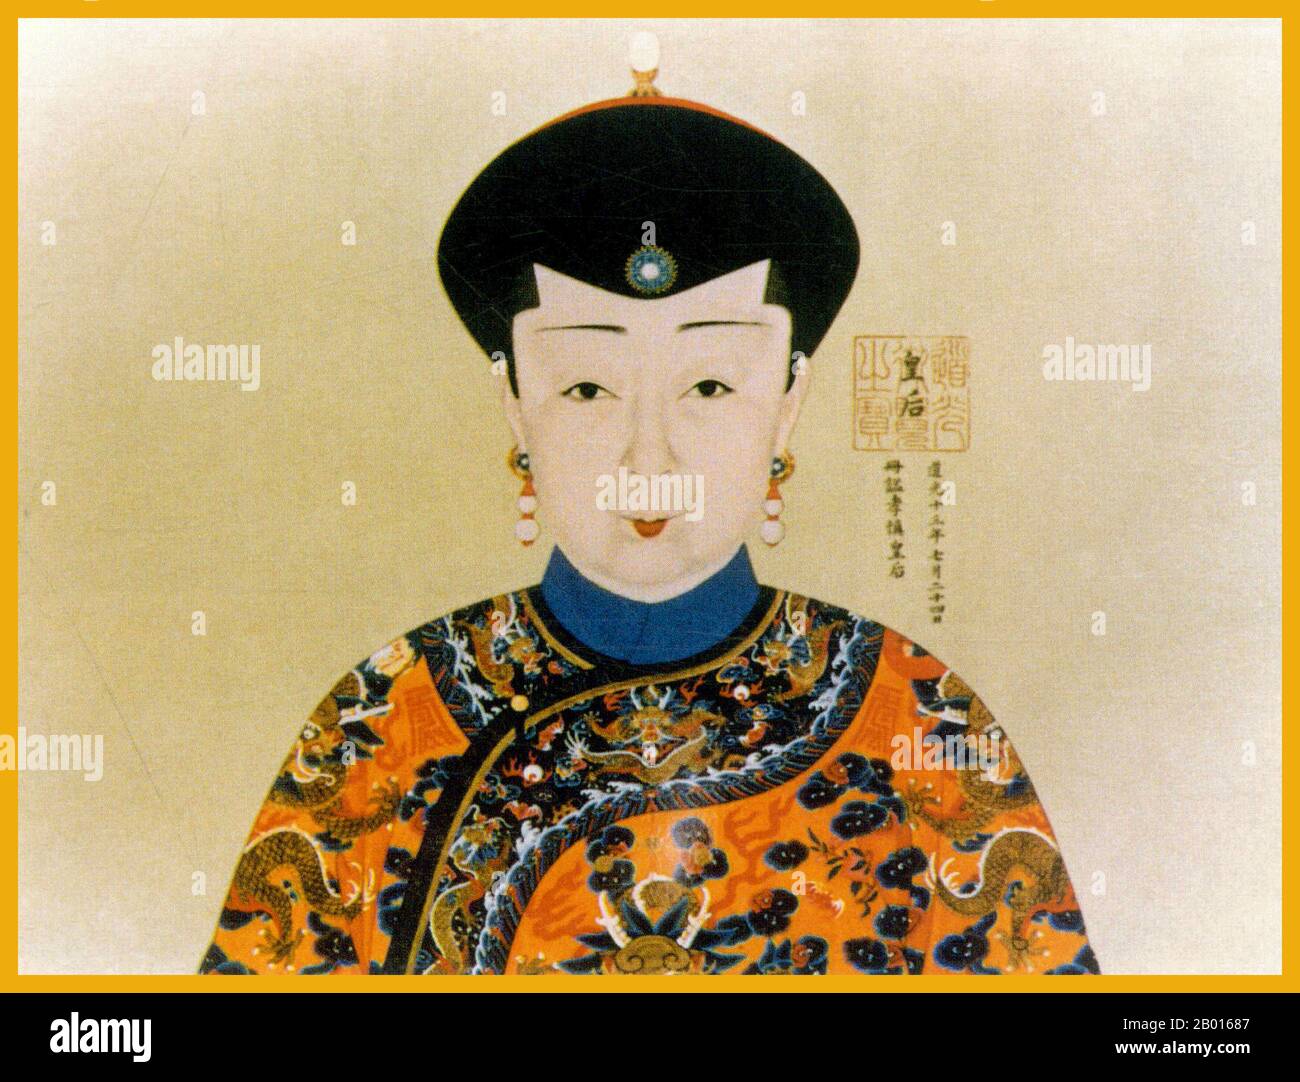 Cina: Imperatrice Xiao Shen Cheng (5 luglio 1792 - 16 giugno 1833), seconda imperatrice dell'imperatore Daoguang. Pittura di Handscroll, c.. 1822-1833. L'imperatrice Xiaoshencheng fu il secondo imperatrice dell'imperatore Daoguang, e proveniva dal Manchu confinante con il clan giallo di Banner Tunggiya. Lady Tunggiya sposò Minning, il futuro imperatore Daoguang, nel 1809. Divenne consorte dell'imperatrice quando suo marito fu intronato nel 1820, anche se la sua concessione postuma del titolo 'imperatrice Xiaomu' alla sua prima consorte, Lady Niohuru, significava che Lady Tunggiya era tecnicamente la seconda imperatrice. Foto Stock